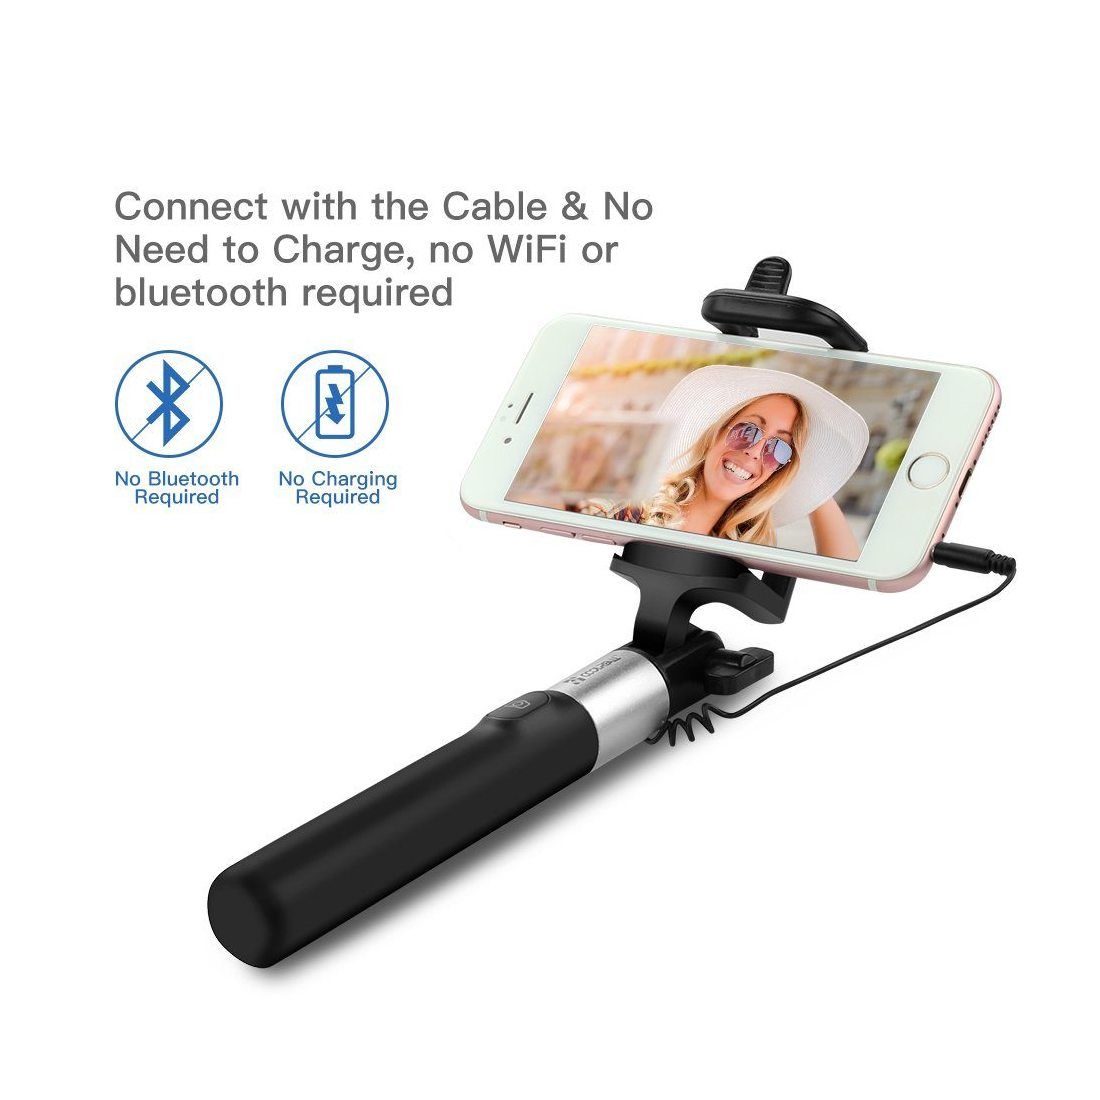 Perche de Selfie ,Coolreall® selfie stick extensible de poche  Bâton de Selfie avec télécommande câble pour iPhone, Android S